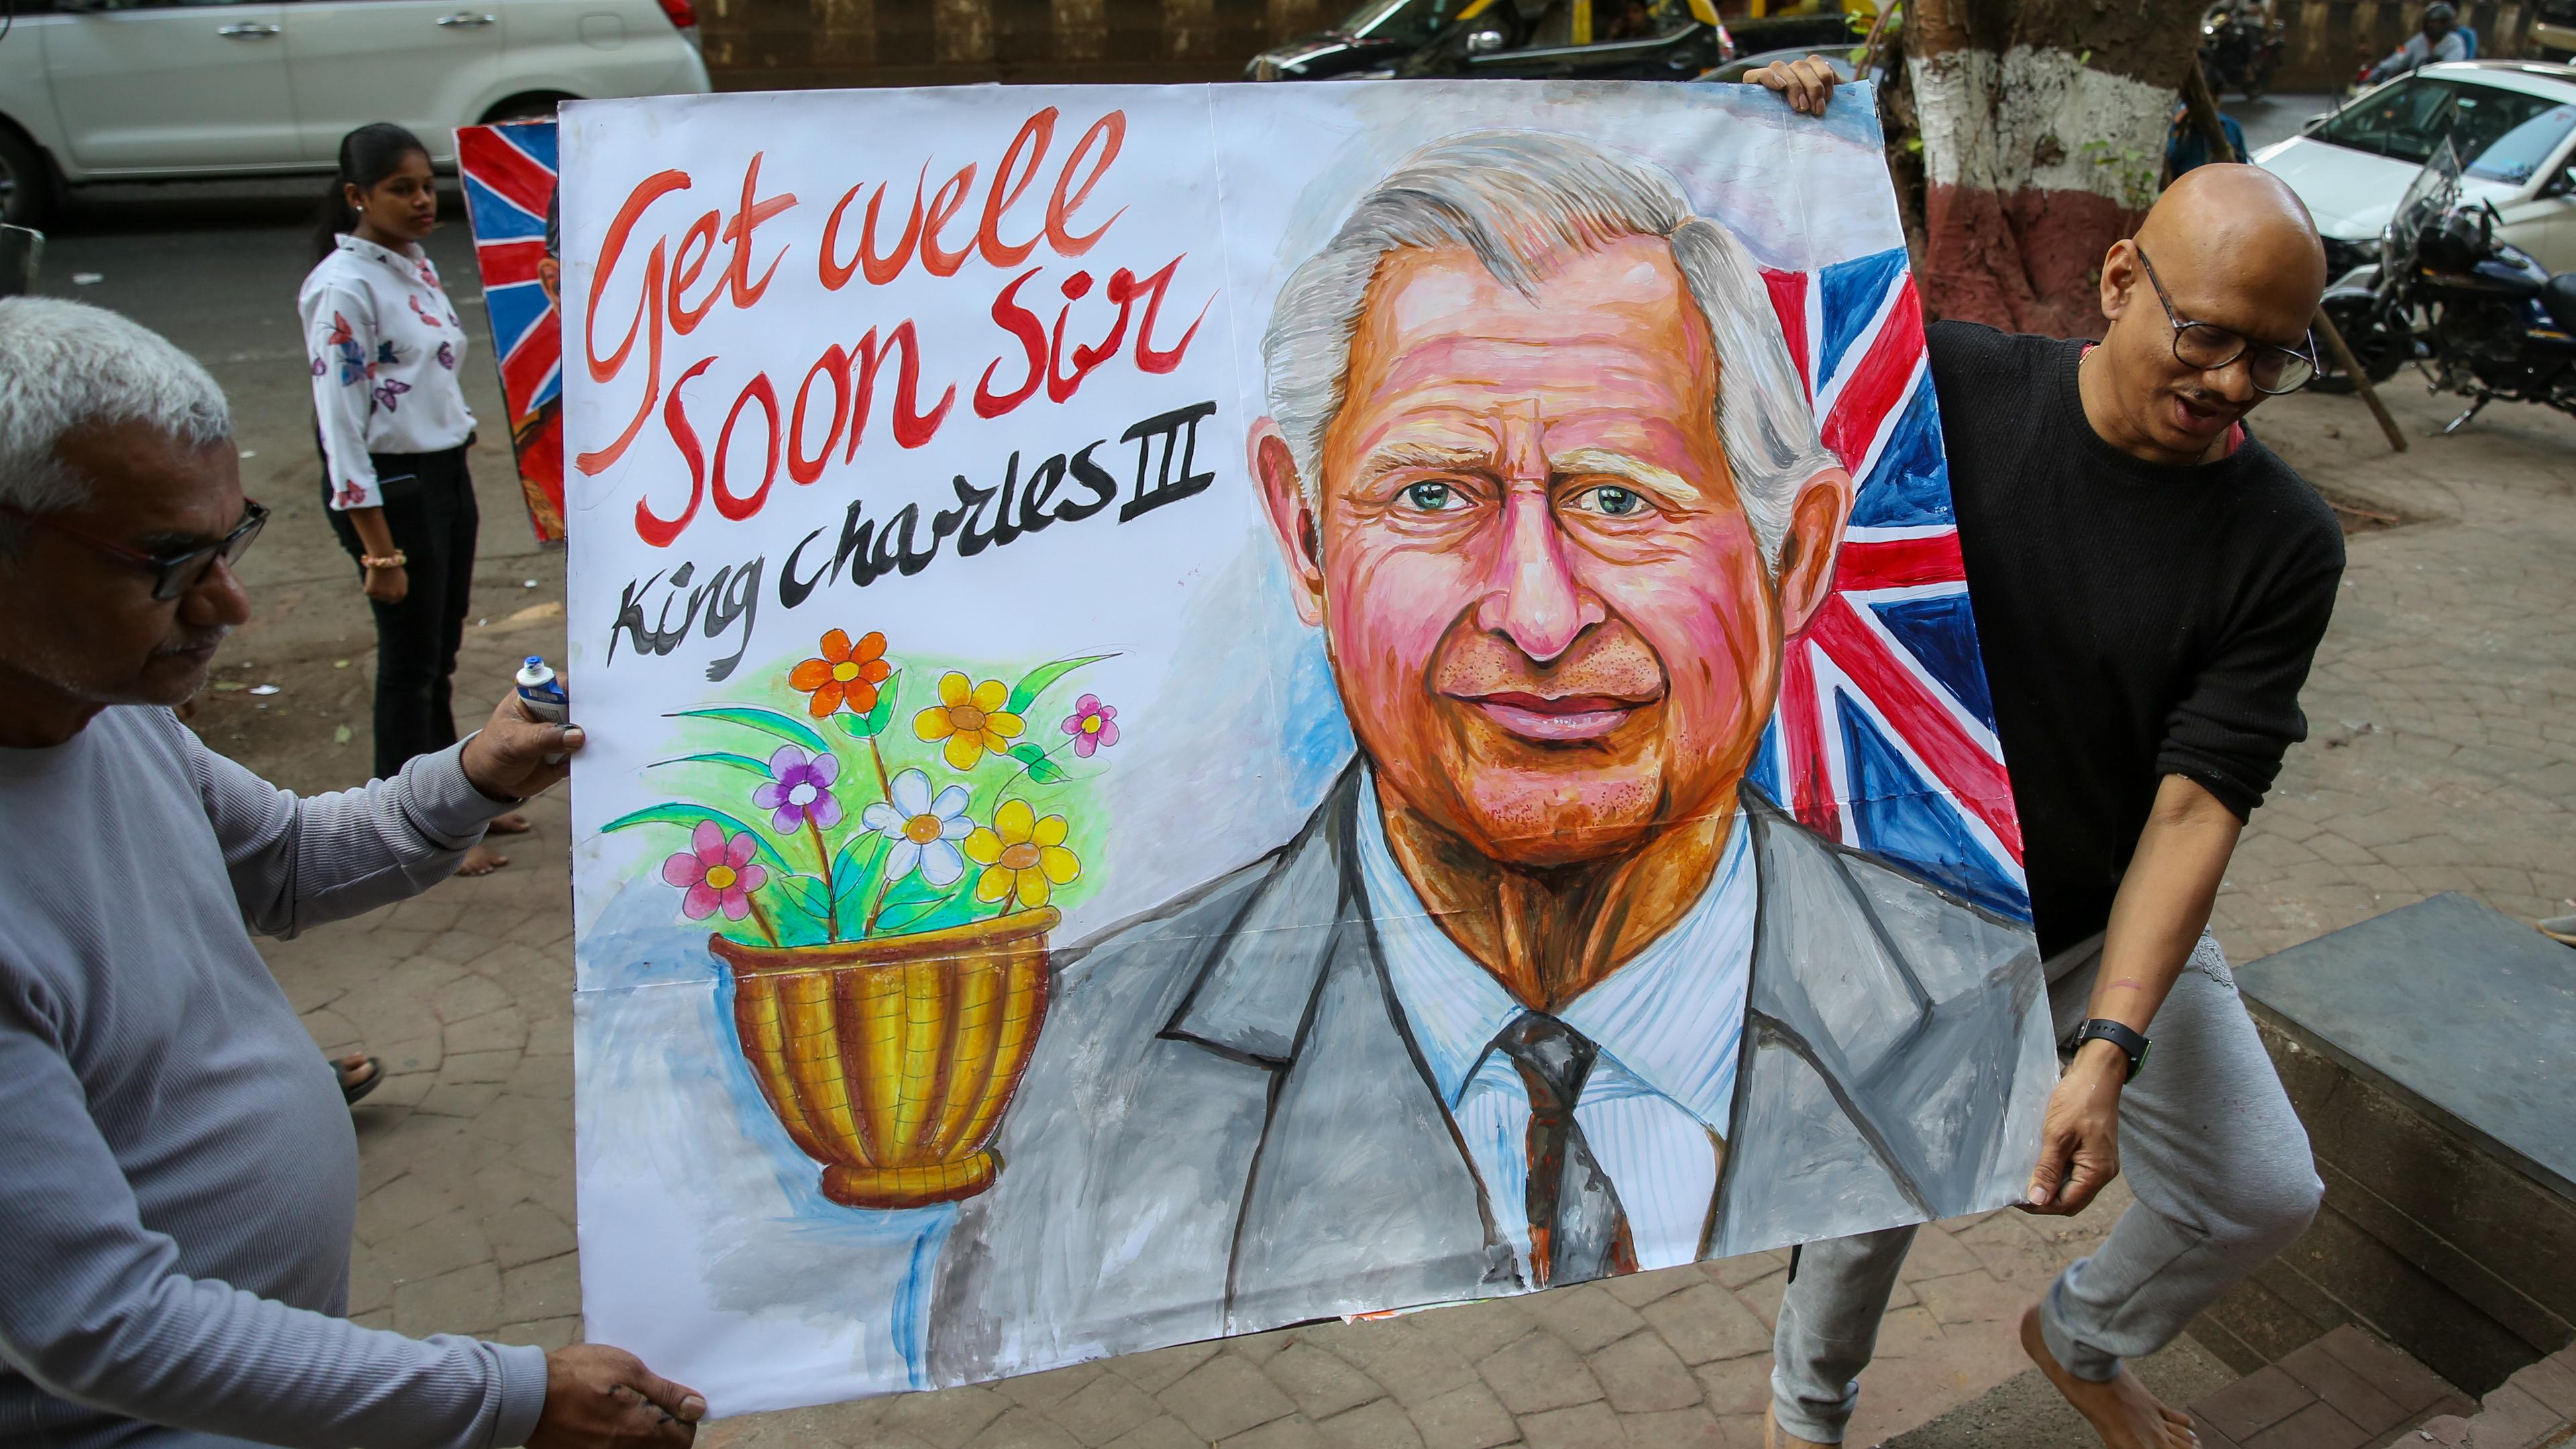 Ein gemaltes Bild von König Charles, auf dem "Get well soon" steht